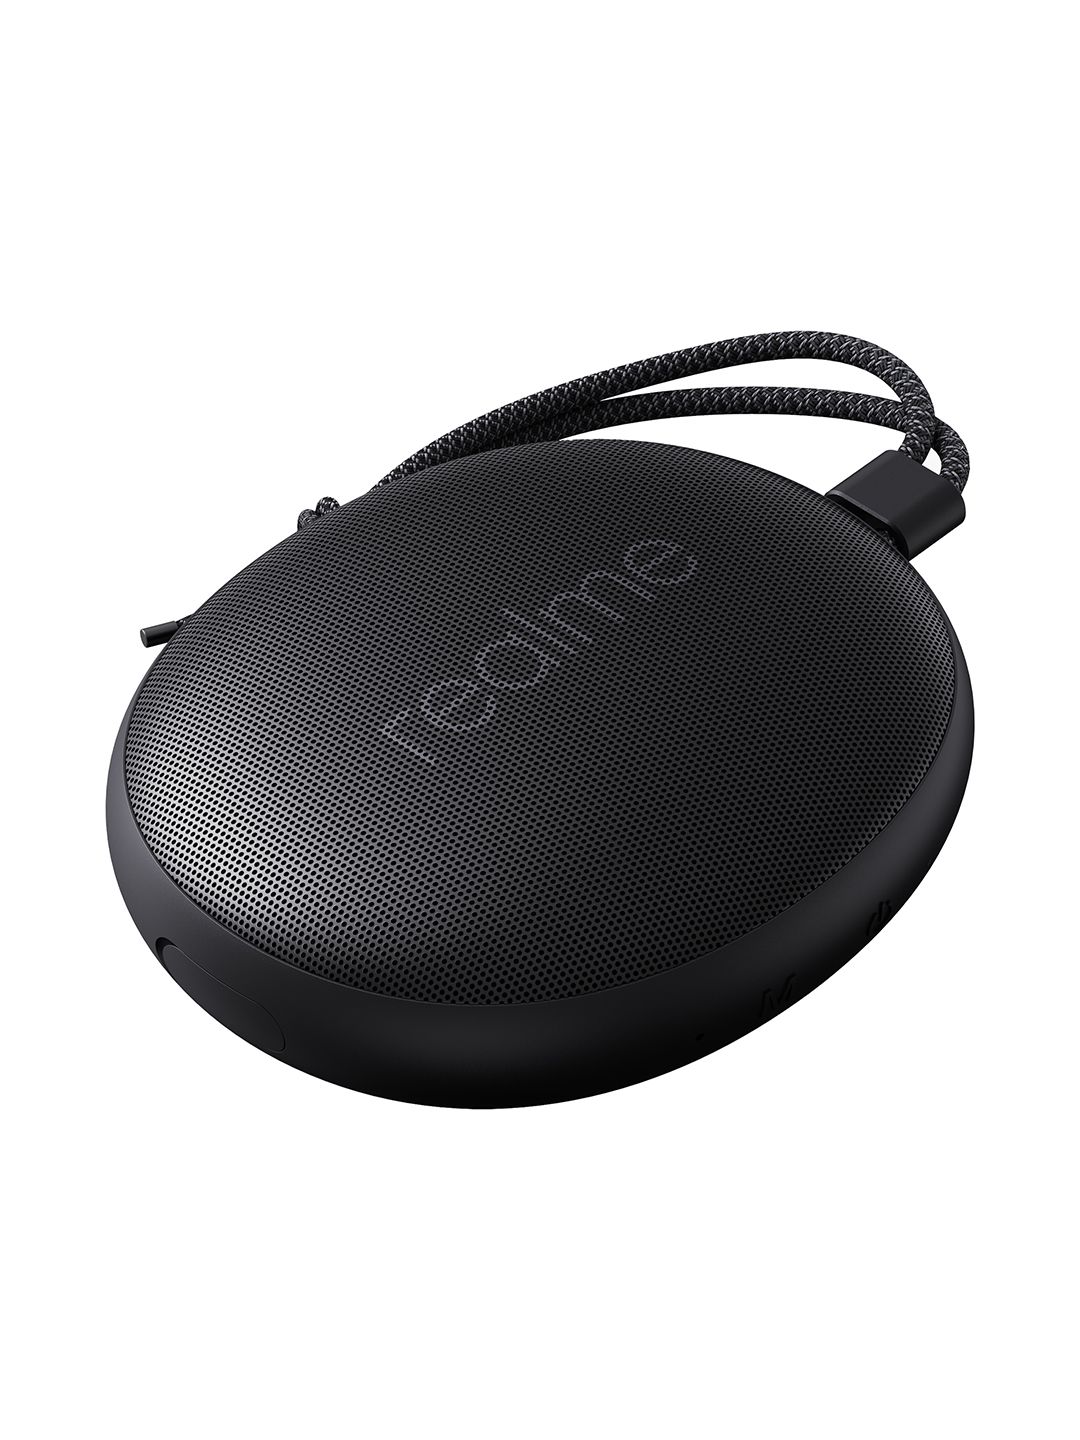 Realme Black Cobble 5W Bluetooth Speaker Price in India